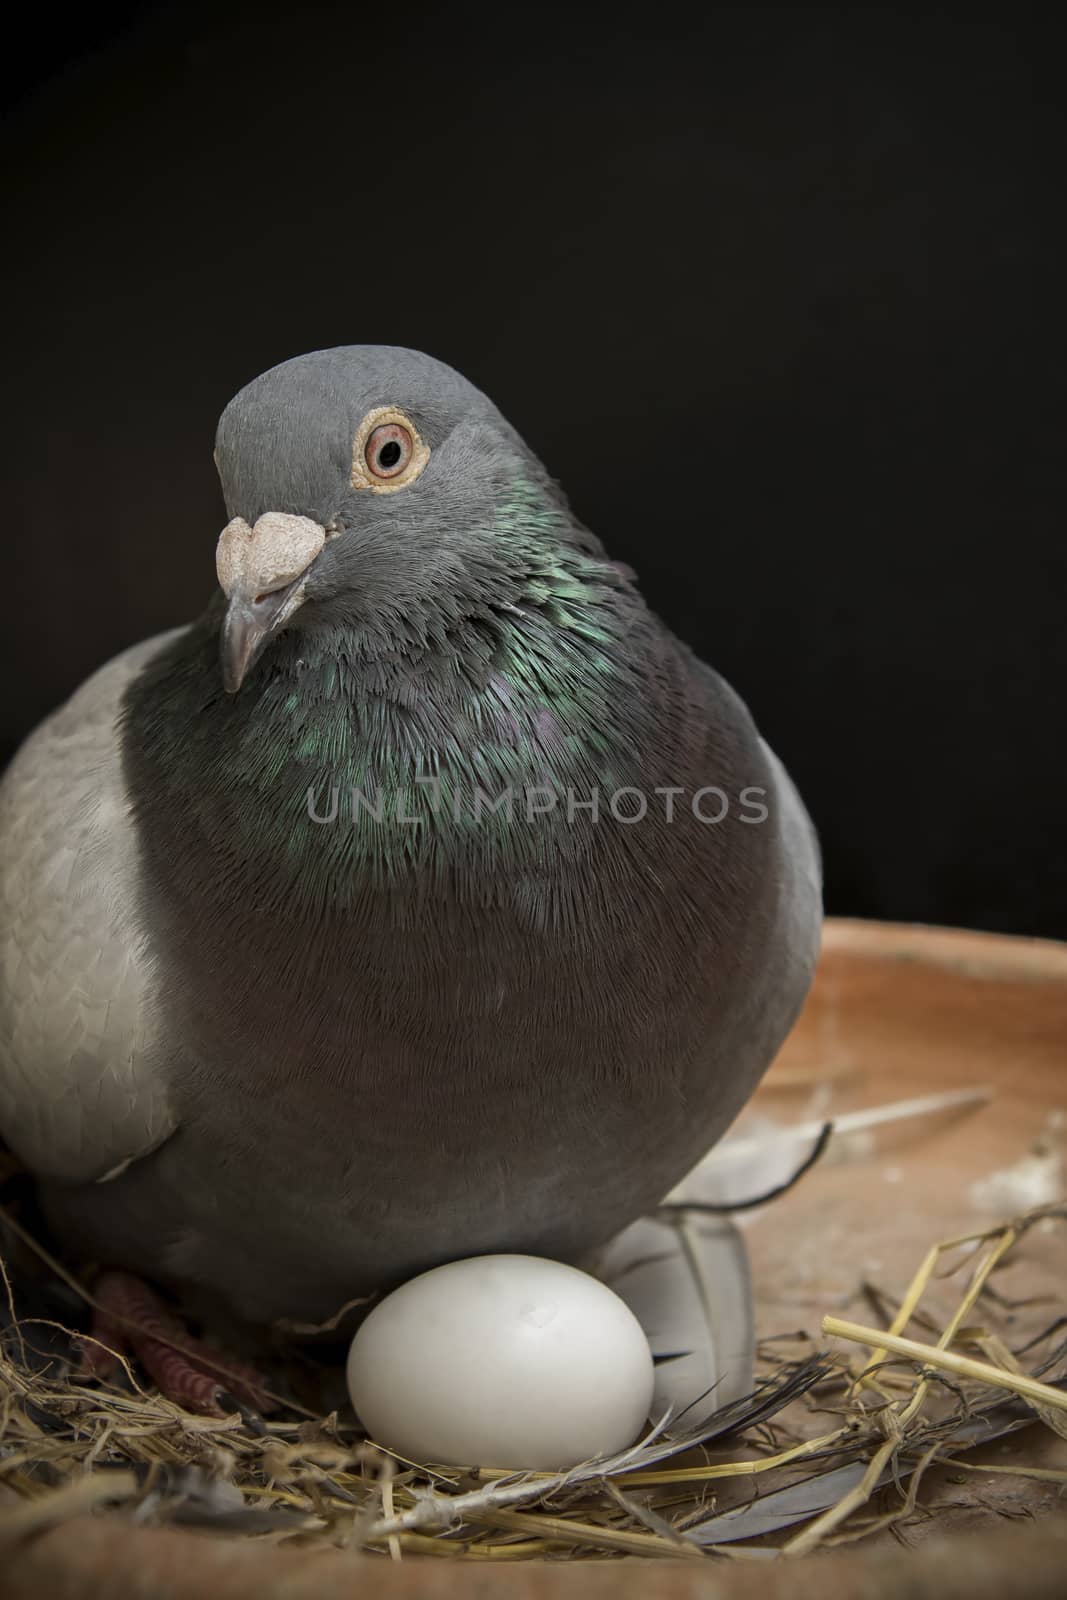 pigeion bird hatching egg in home loft